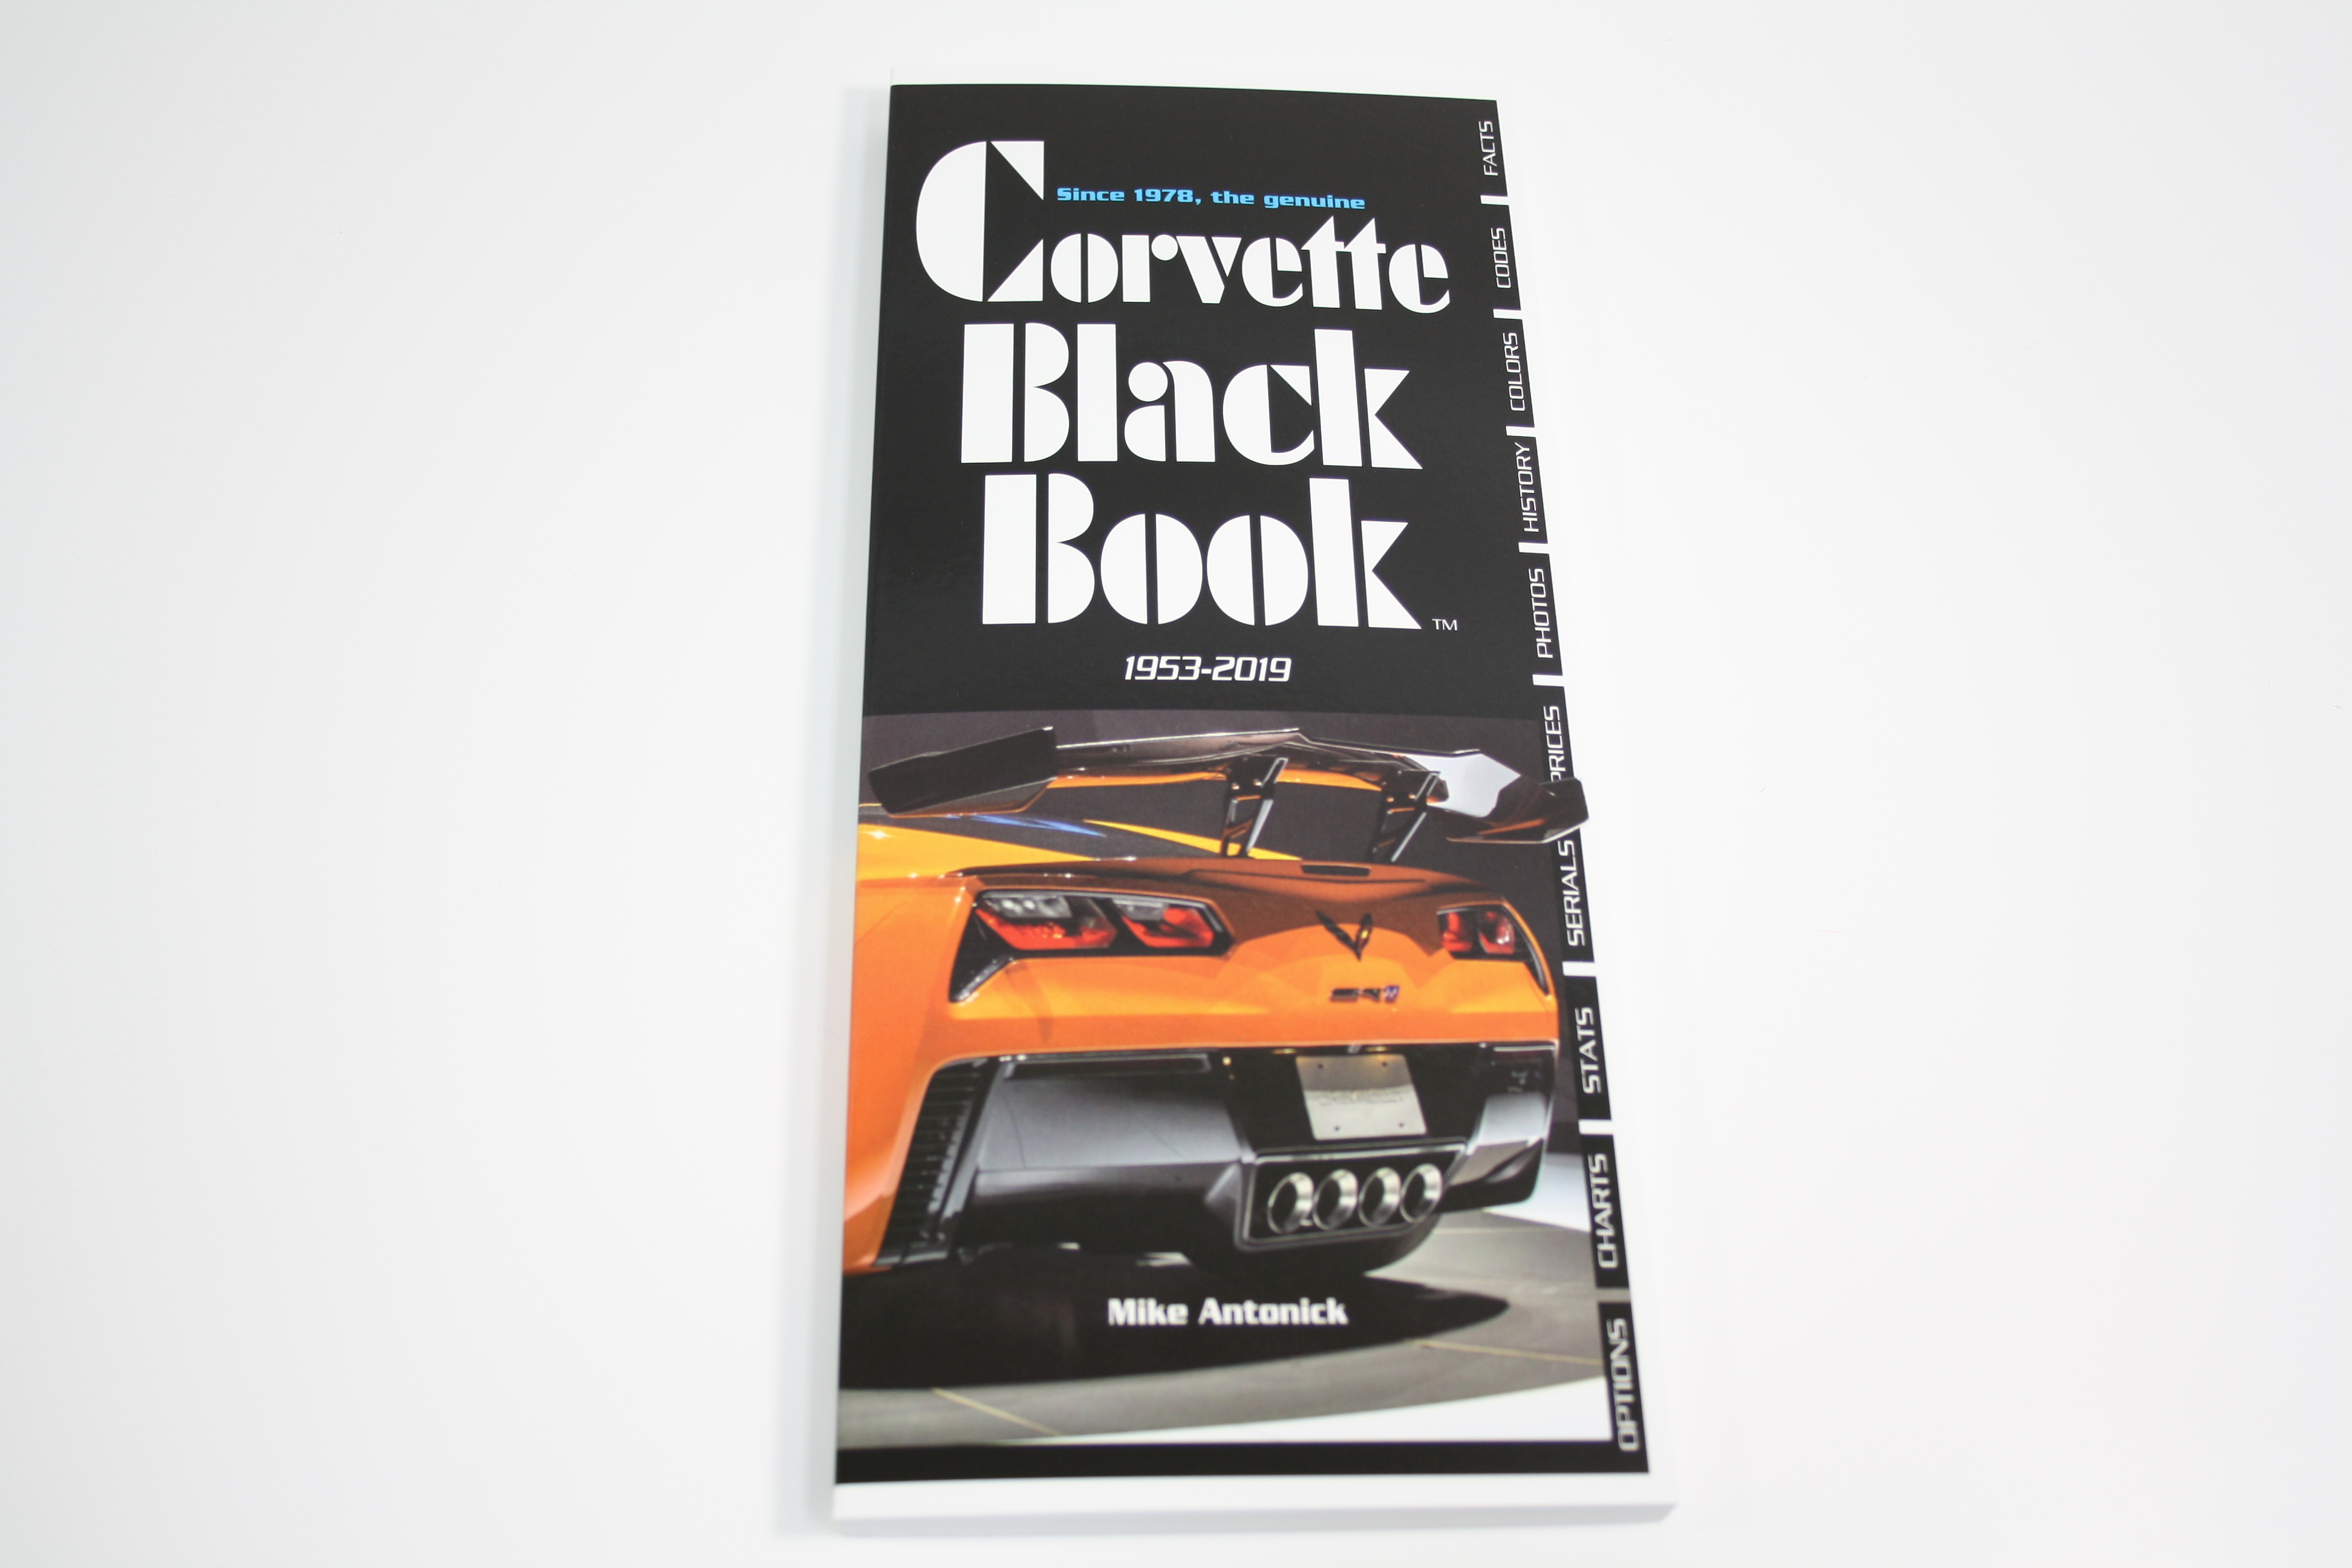 1953-2019 Corvette THE CORVETTE BLACK BOOK 1953-2019